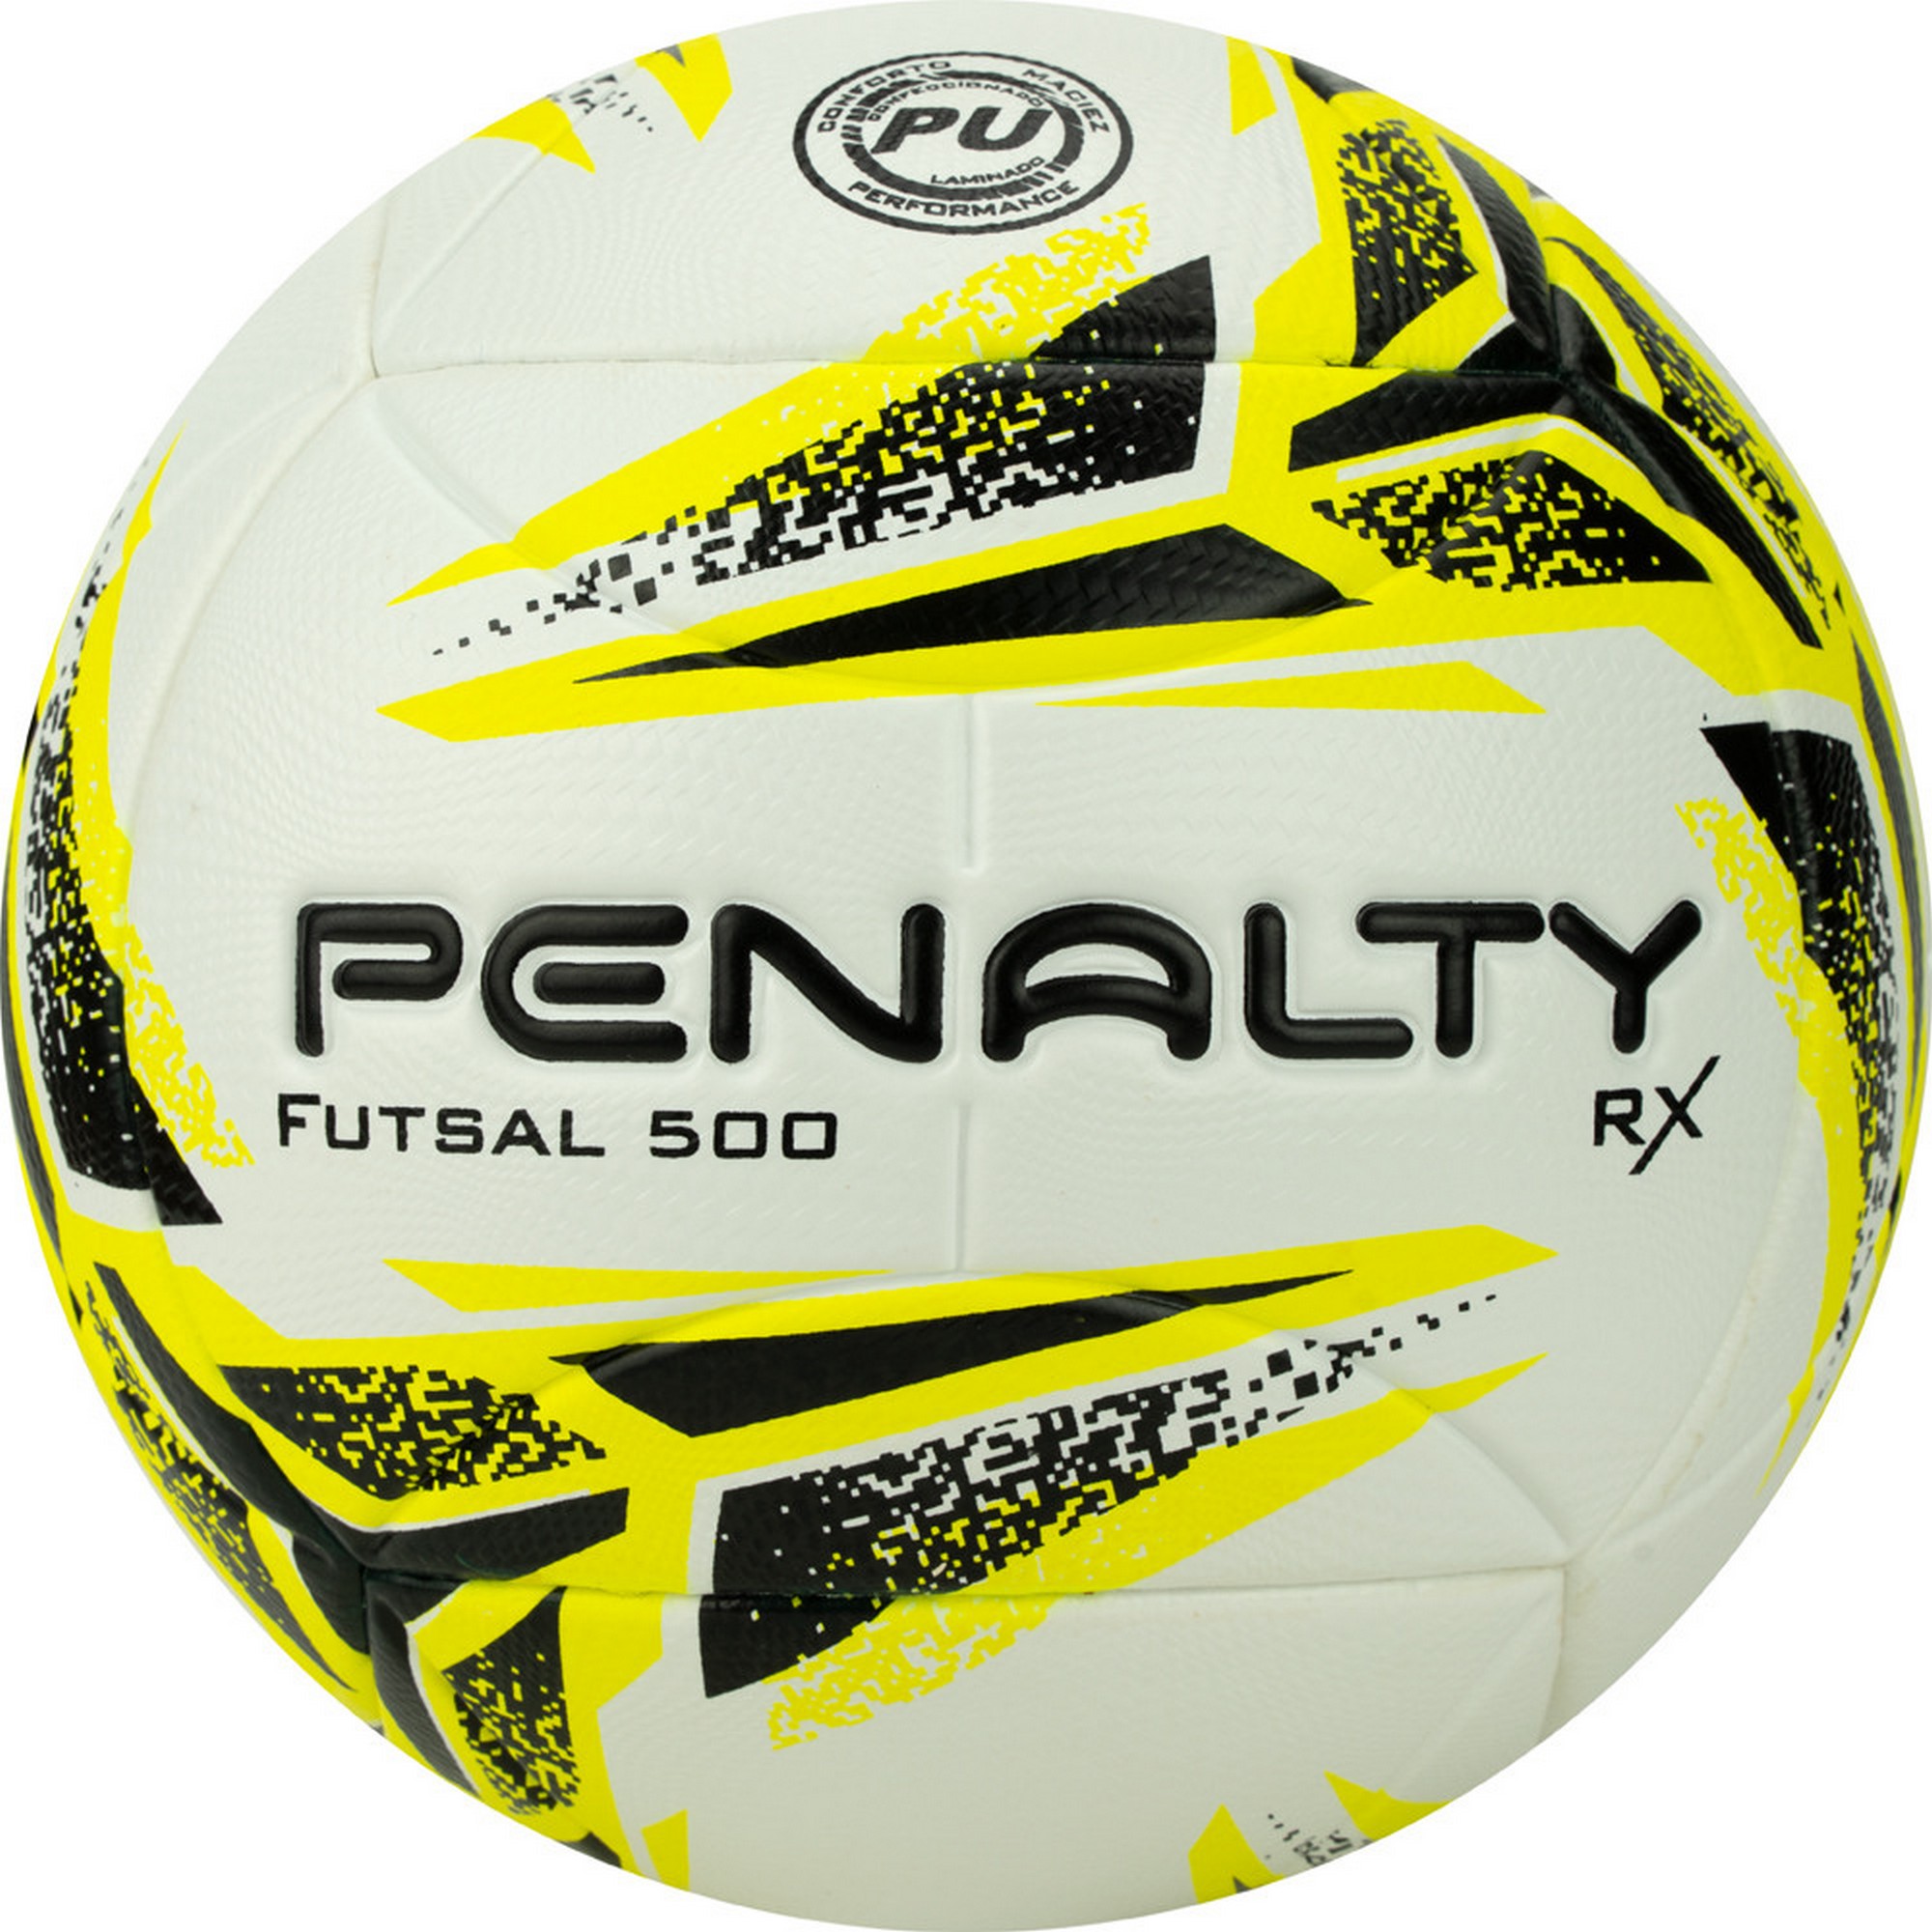   Penalty Bola Futsal RX 500 XXIII 5213421810-U .4